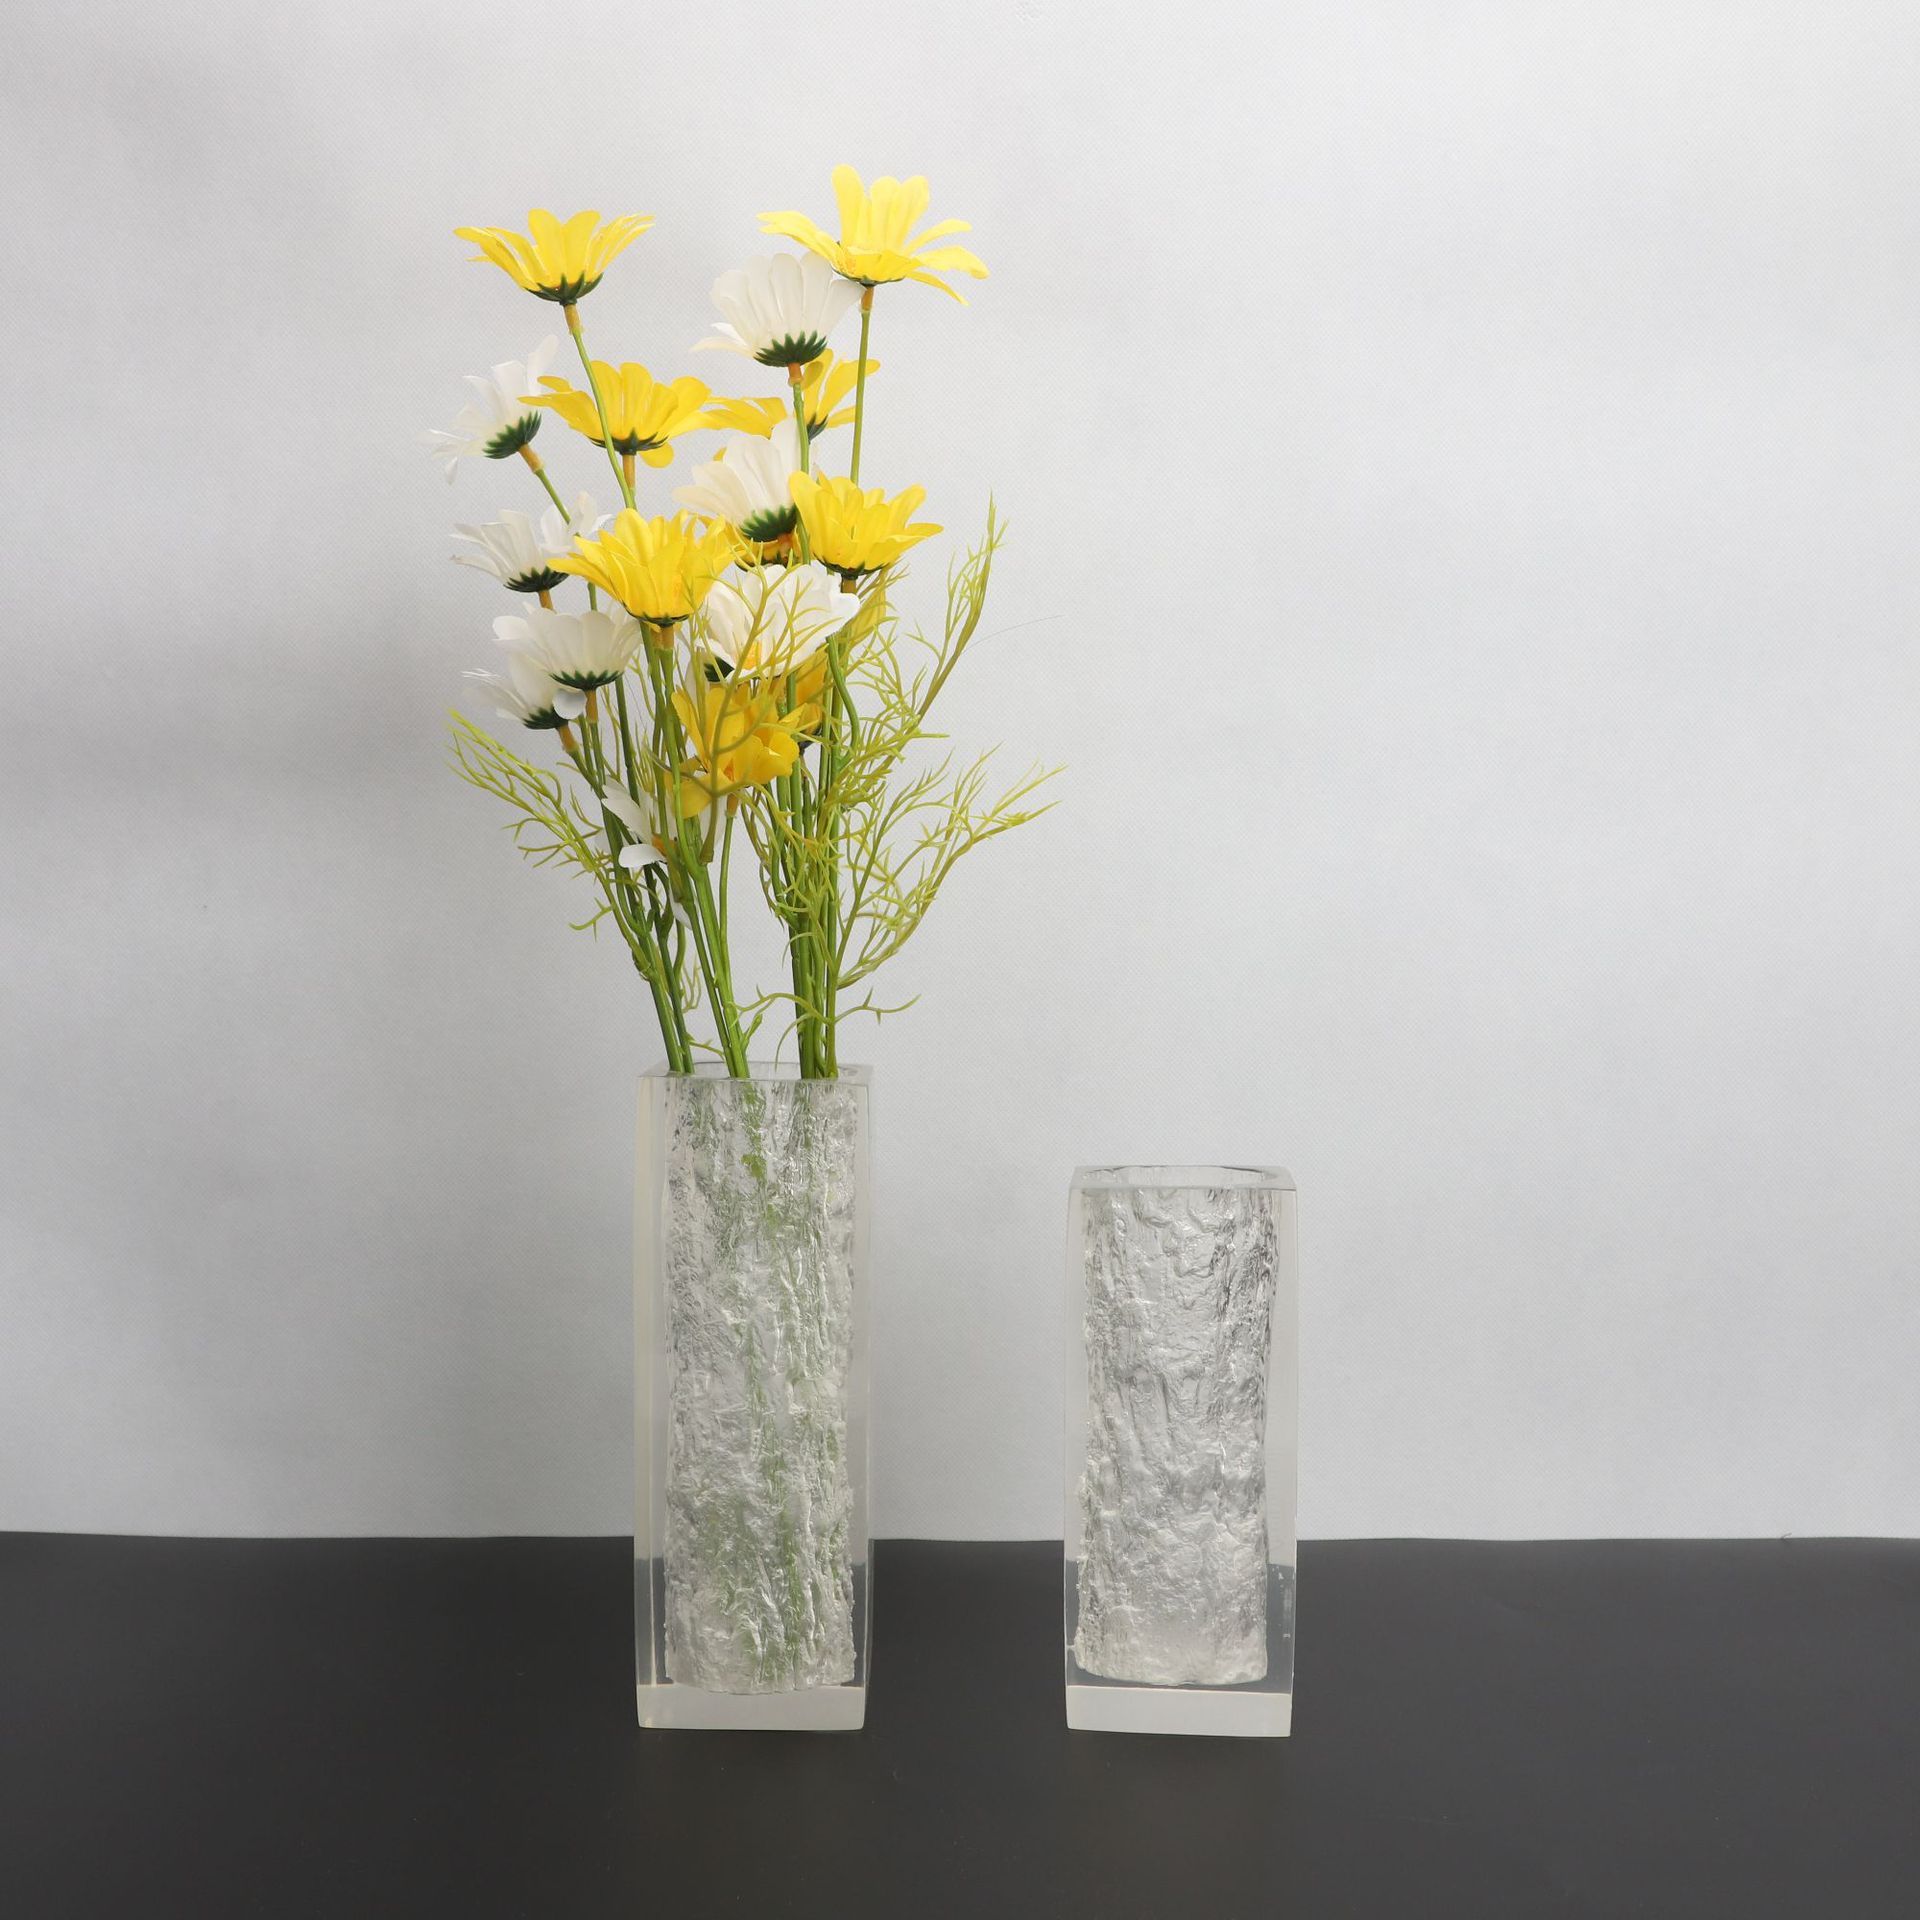 现代简约透明树脂花瓶树脂工艺品家居软装饰品客厅桌面玄关摆件